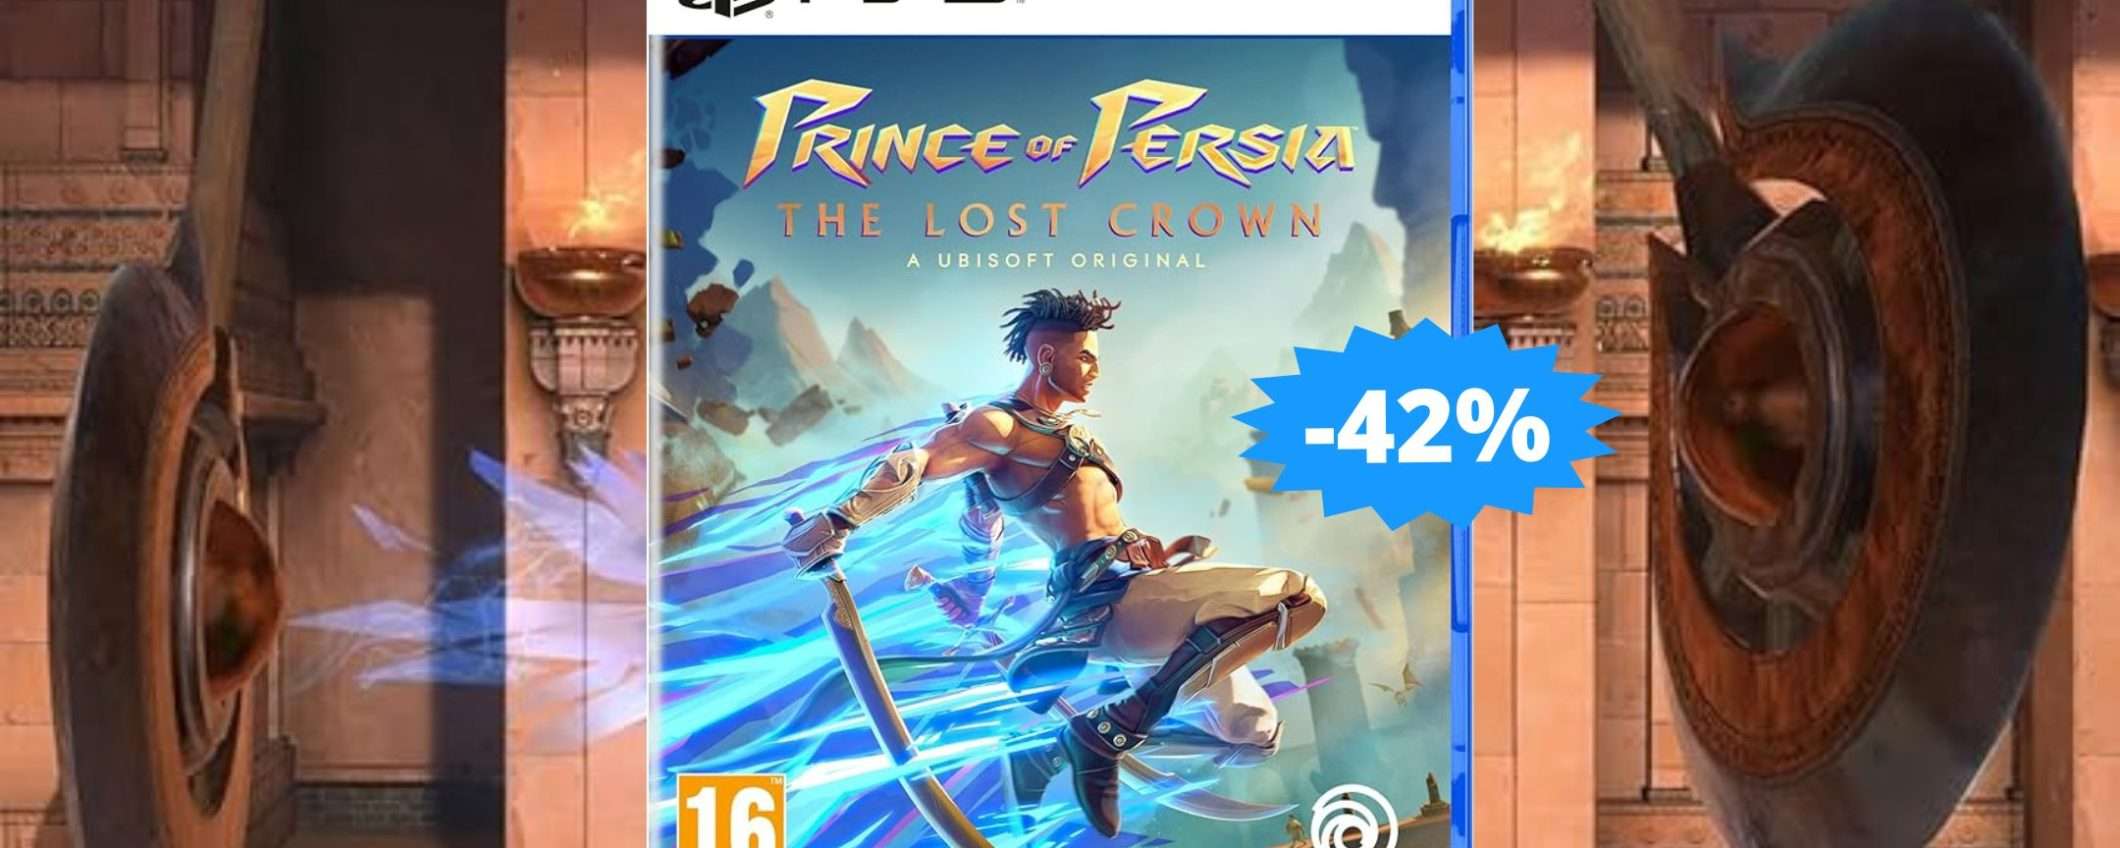 Prince of Persia per PS5: un'avventura EPICA (-42%)